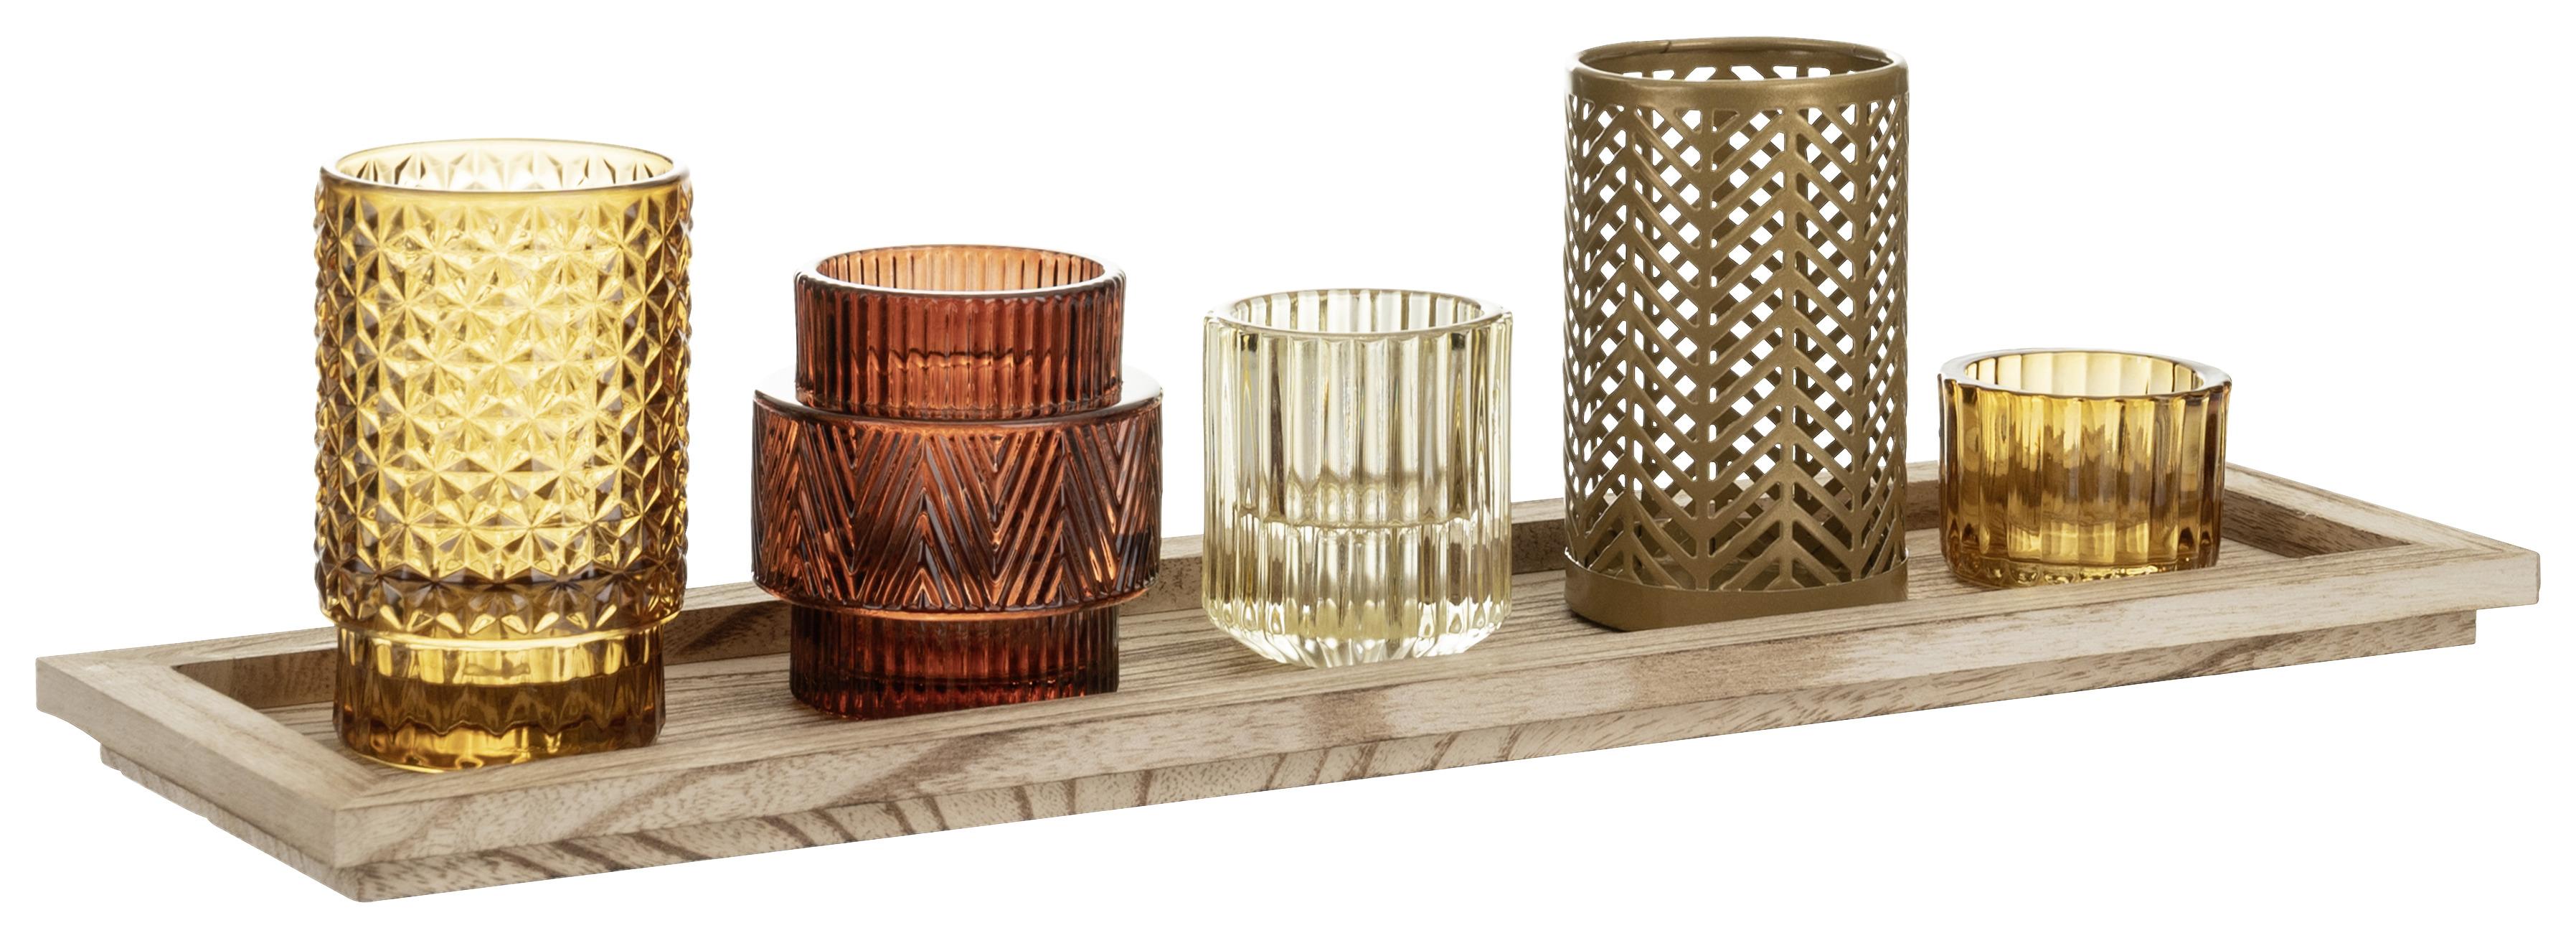 Miska na čajové svíčky Shade - přírodní barvy/barvy zlata, kov/dřevo (43/12,5/11cm) - Modern Living